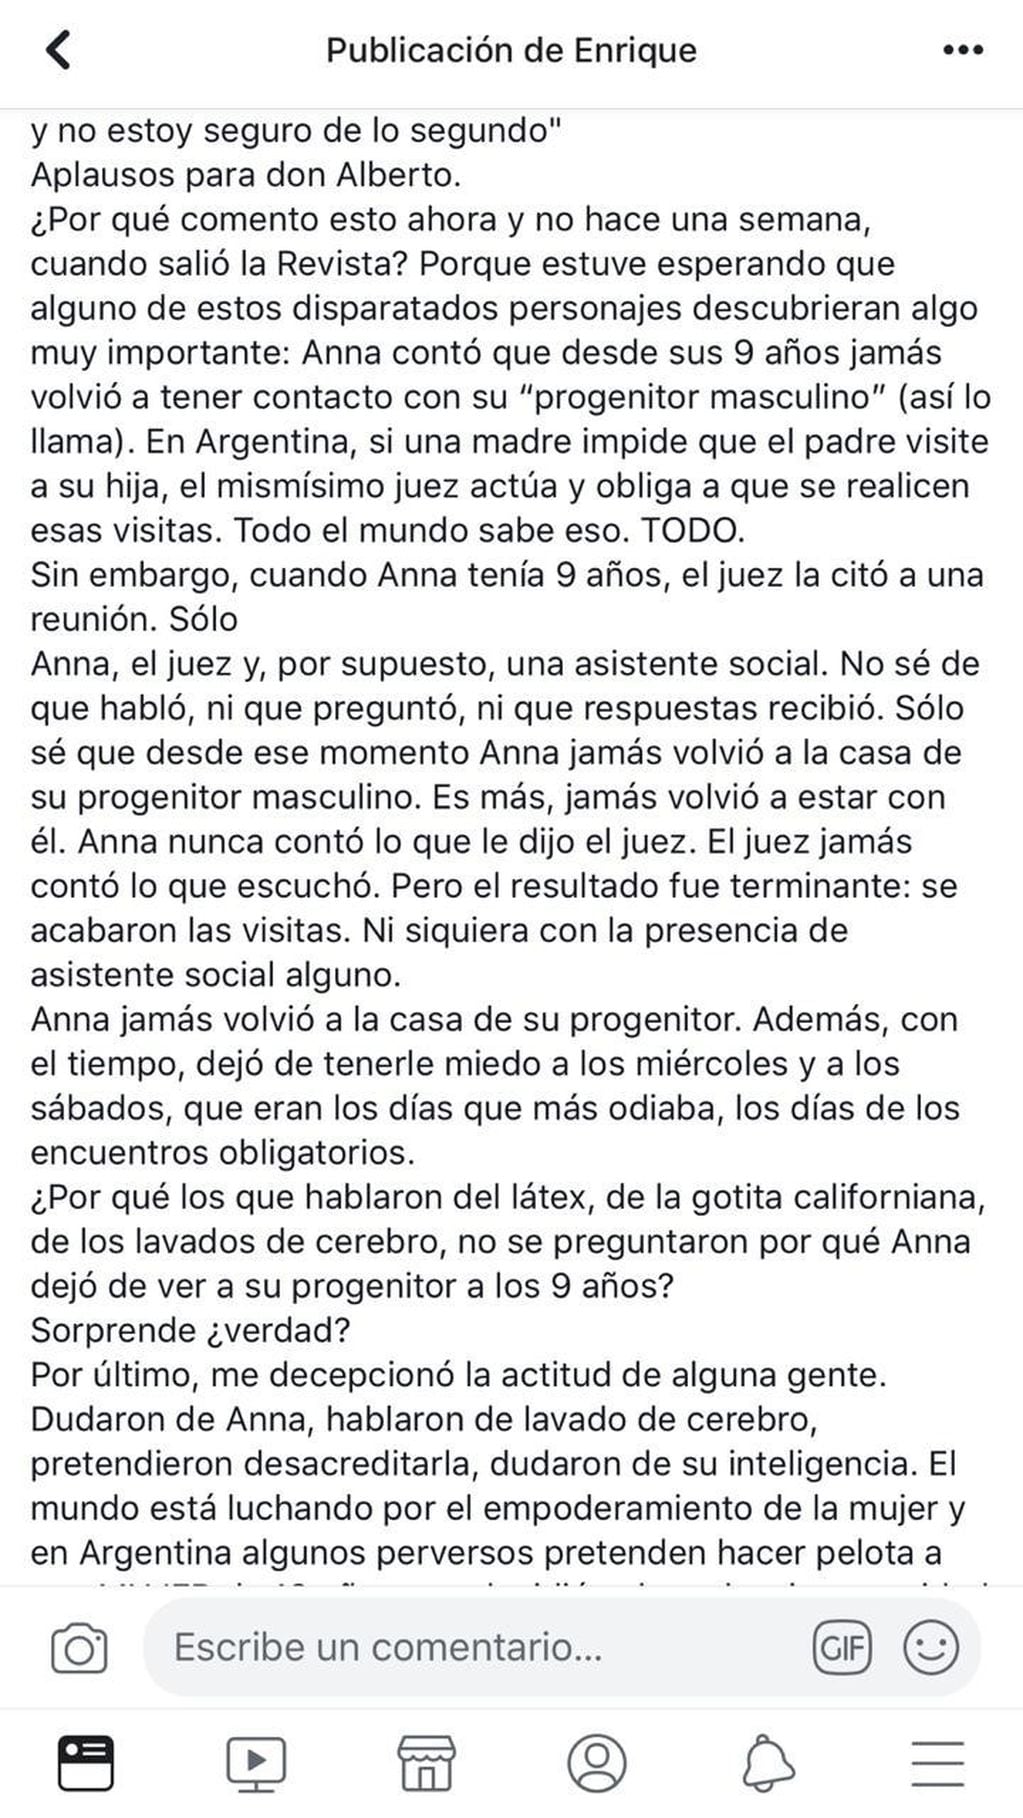 Enrique Torres, el cuñado de Andrea del Boca, publicó una dura carta en Facebook para defender a su sobrina Anna.